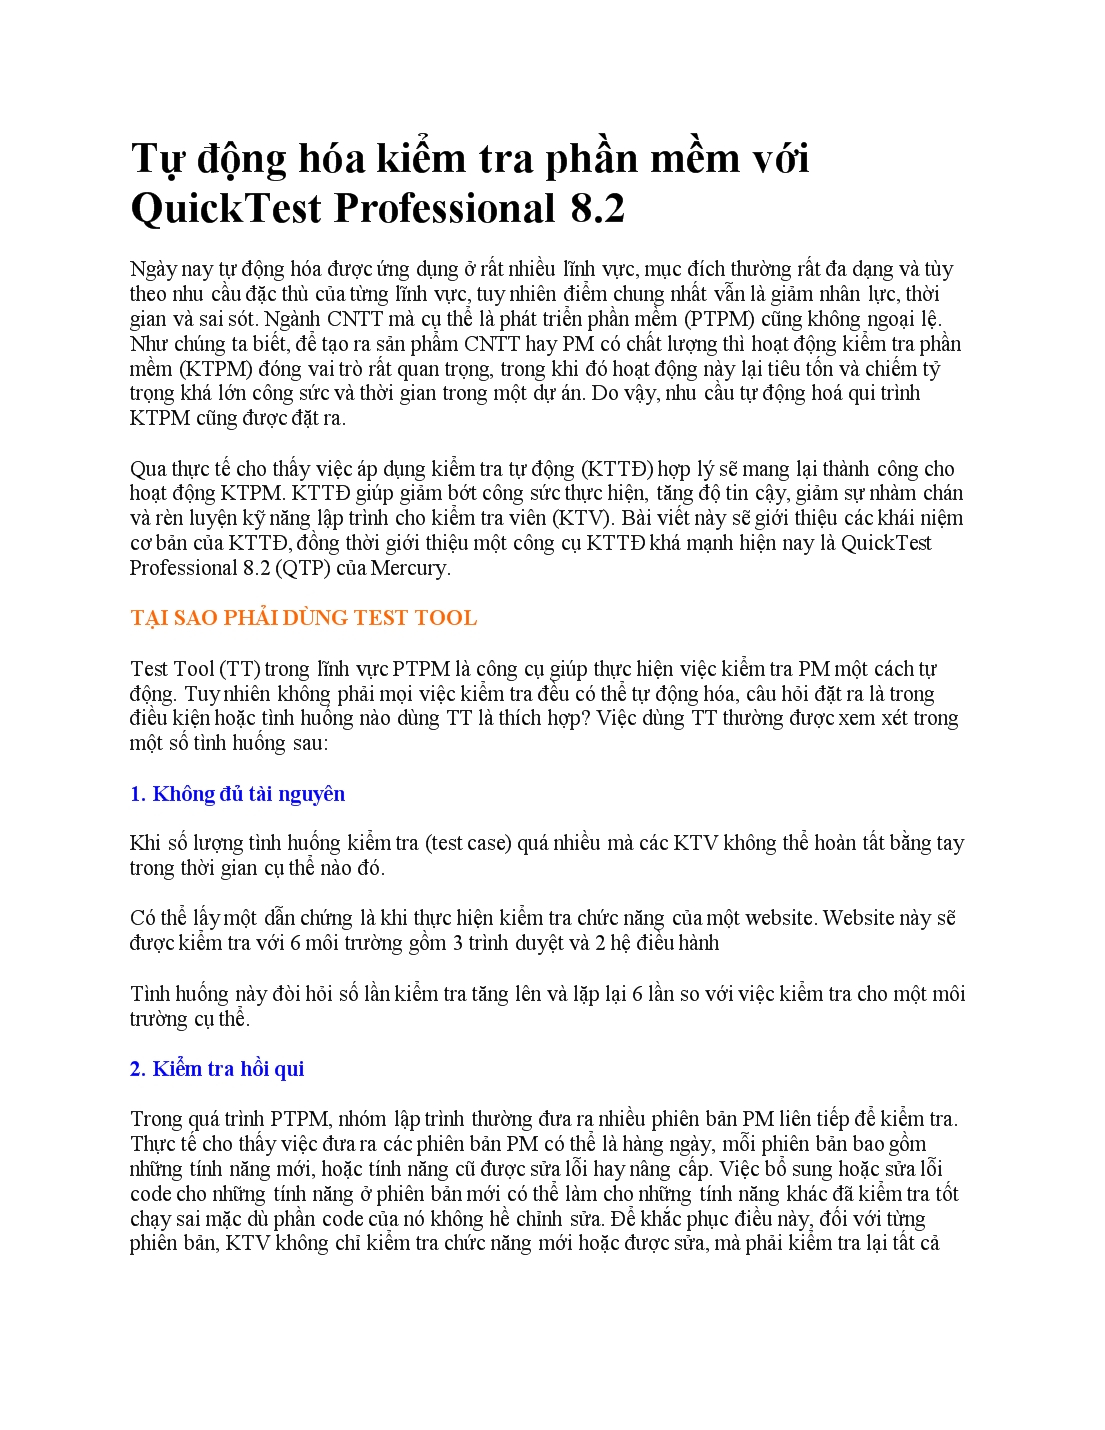 Tự động hóa kiểm tra phần mềm với QuickTest Professional 8.2 trang 1